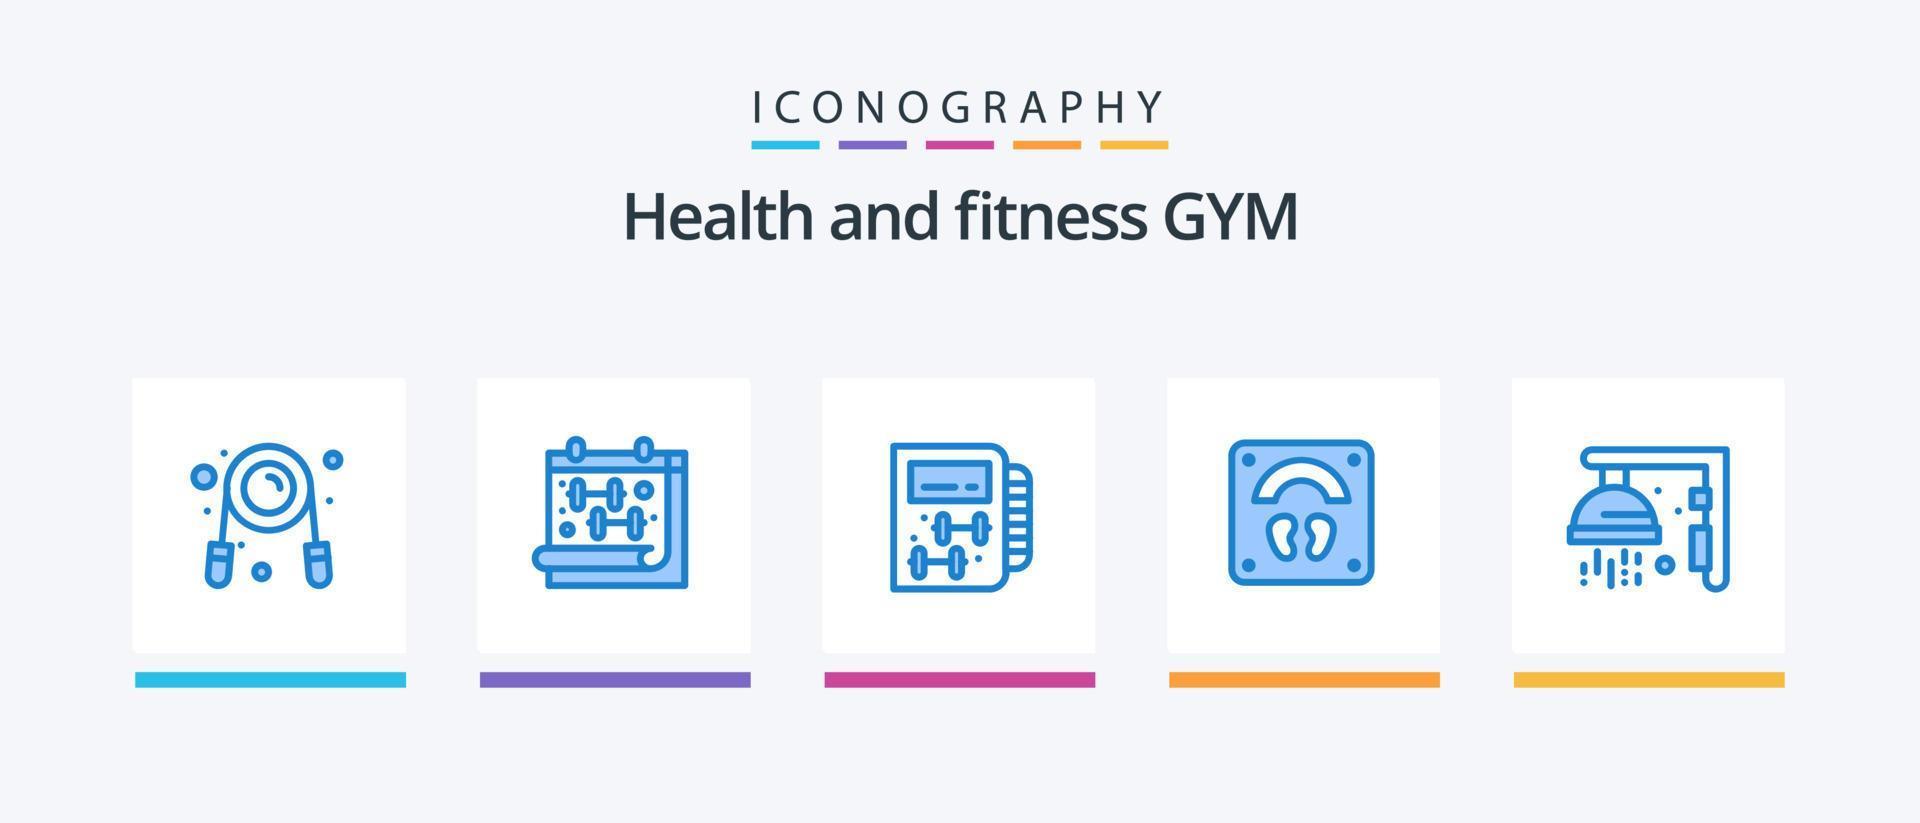 paquete de iconos de gimnasio azul 5 que incluye gimnasio. bienestar. aptitud física. Deportes. cuidado de la salud. diseño de iconos creativos vector